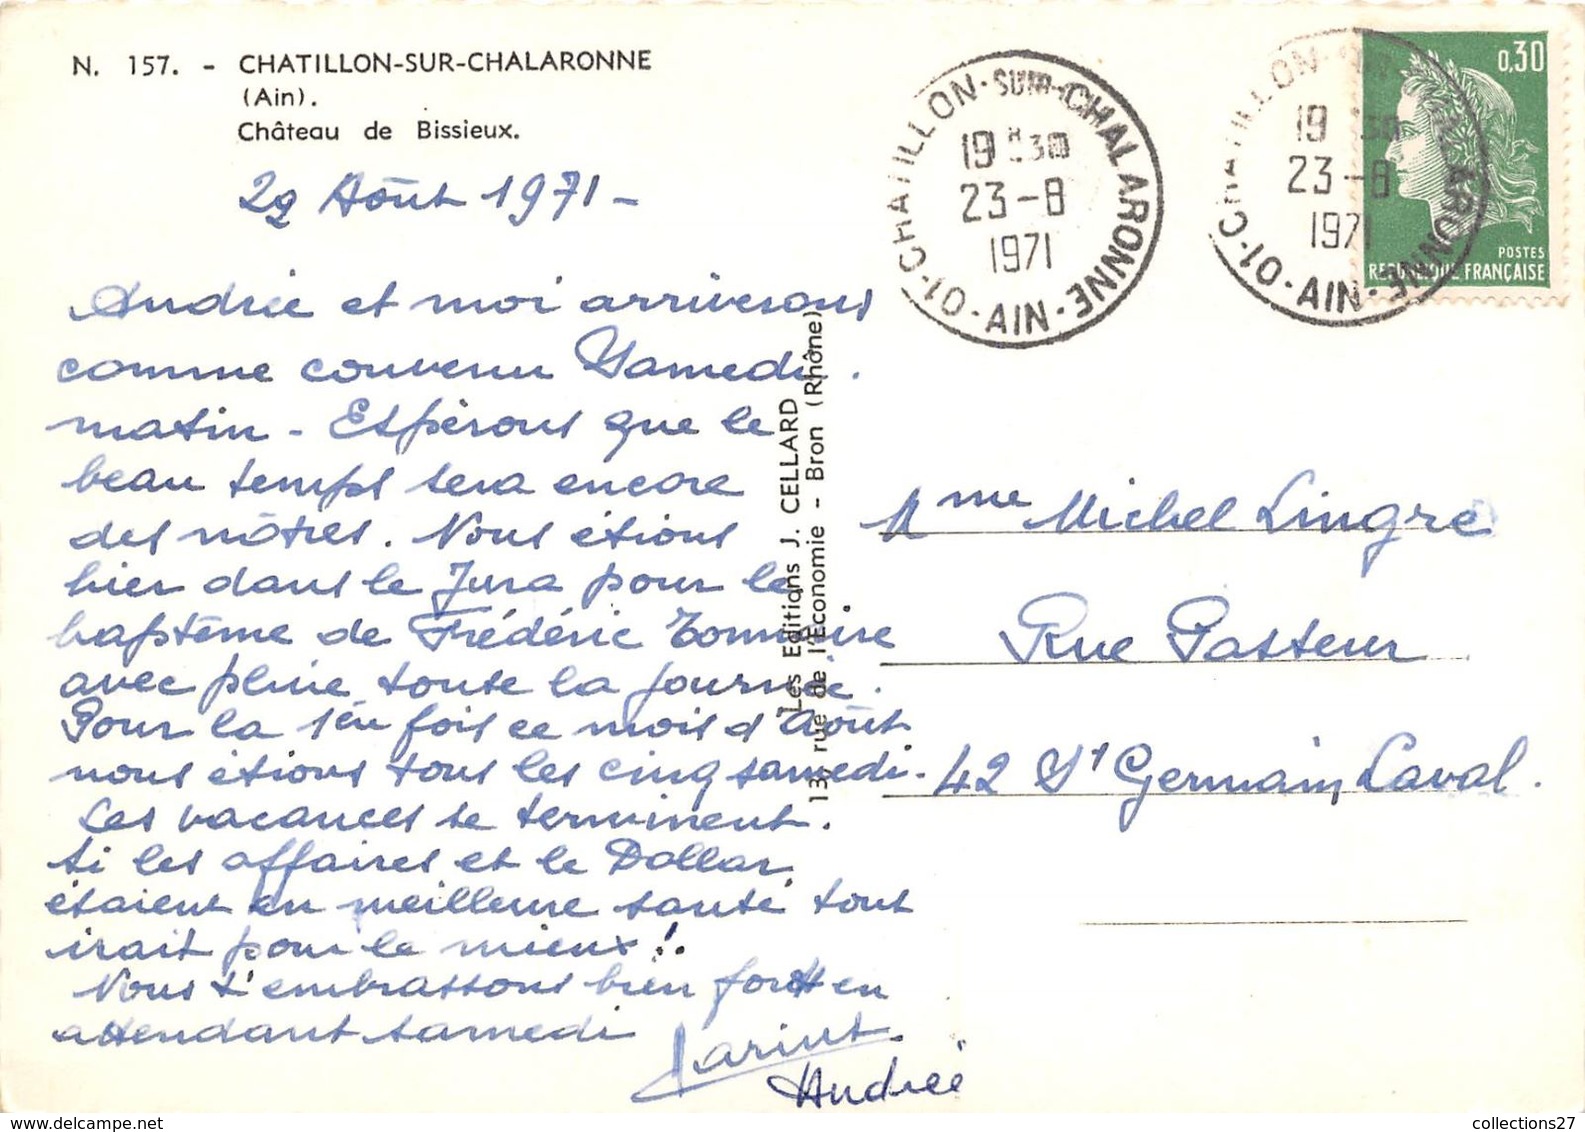 01-CHATILLON-SUR-CHALARONNE- CHATEAU DE BISSIEUX - Châtillon-sur-Chalaronne